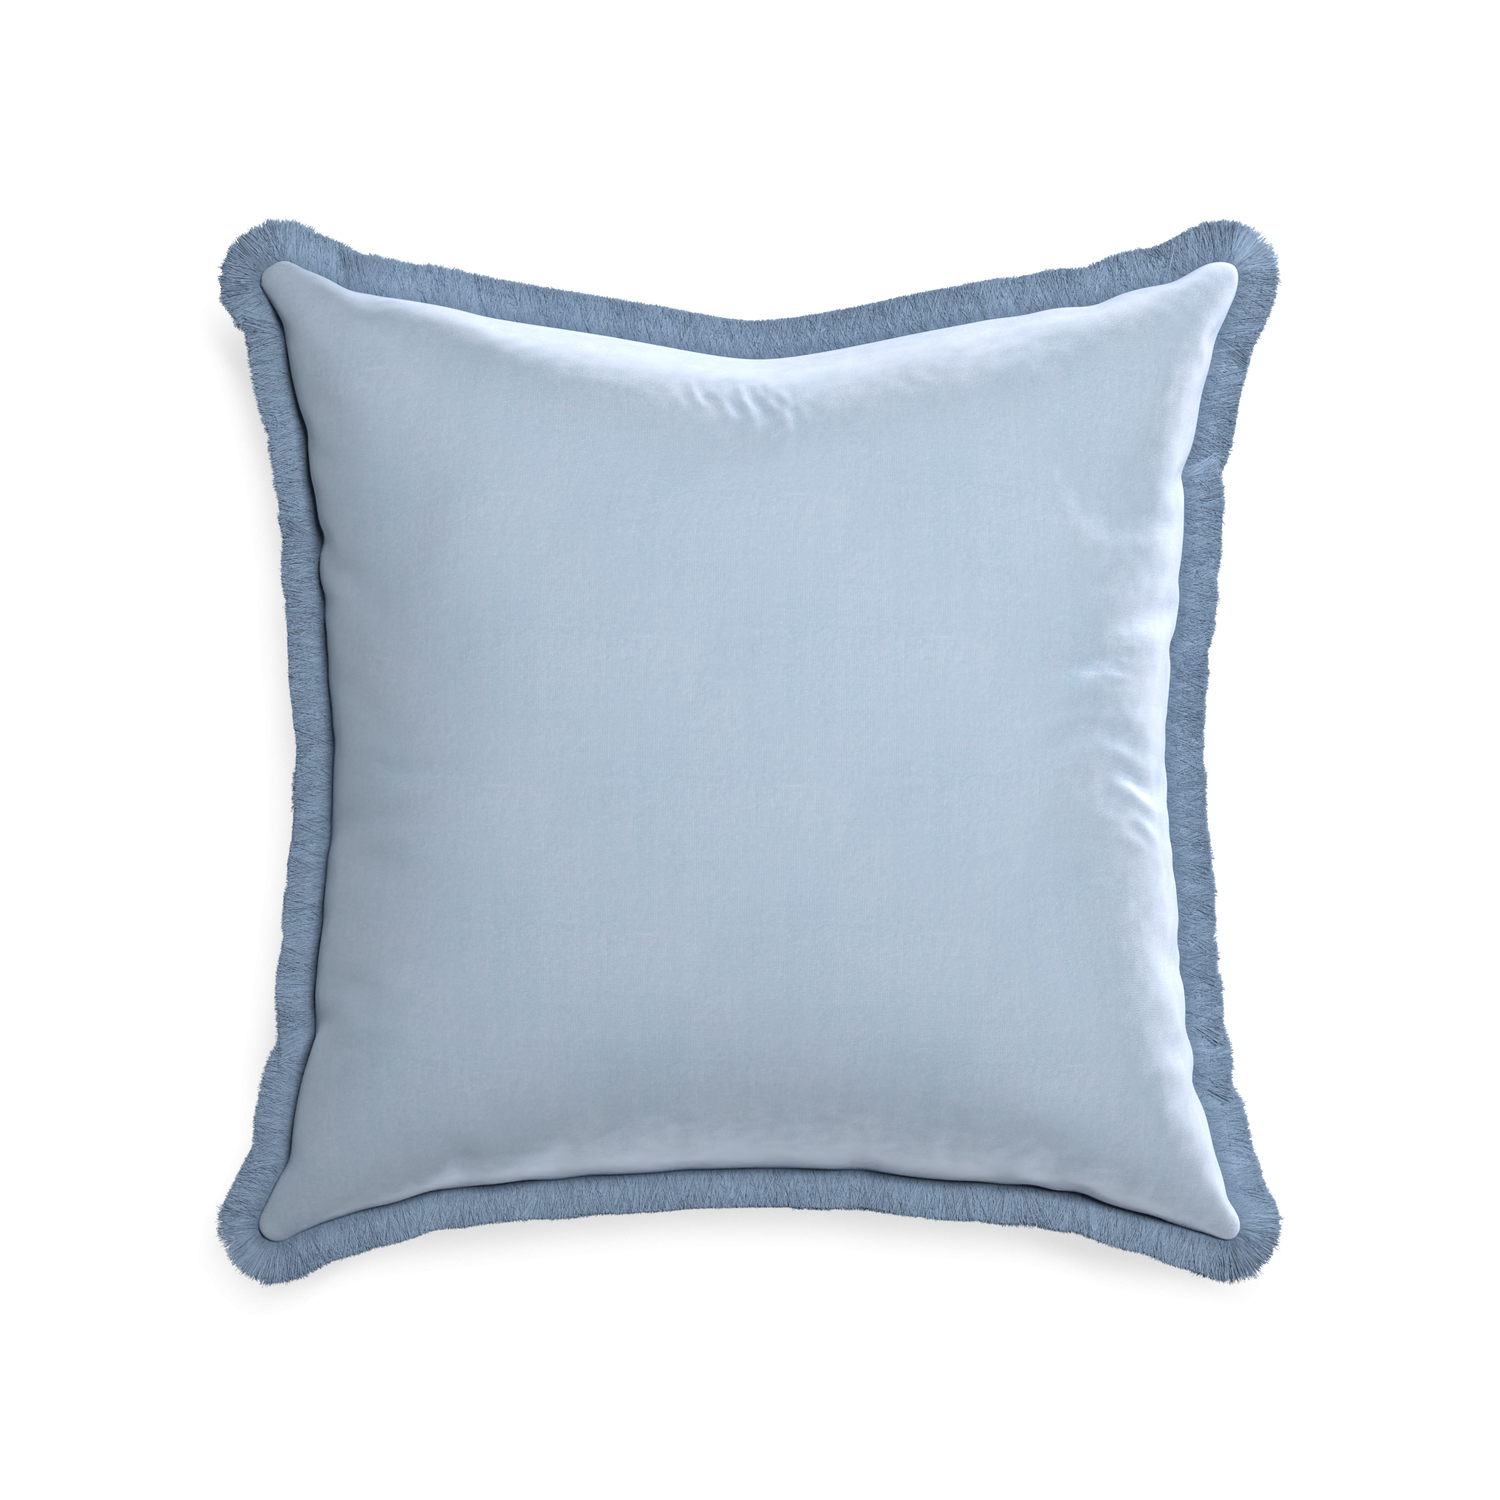 22-square sky velvet custom pillow with sky fringe on white background